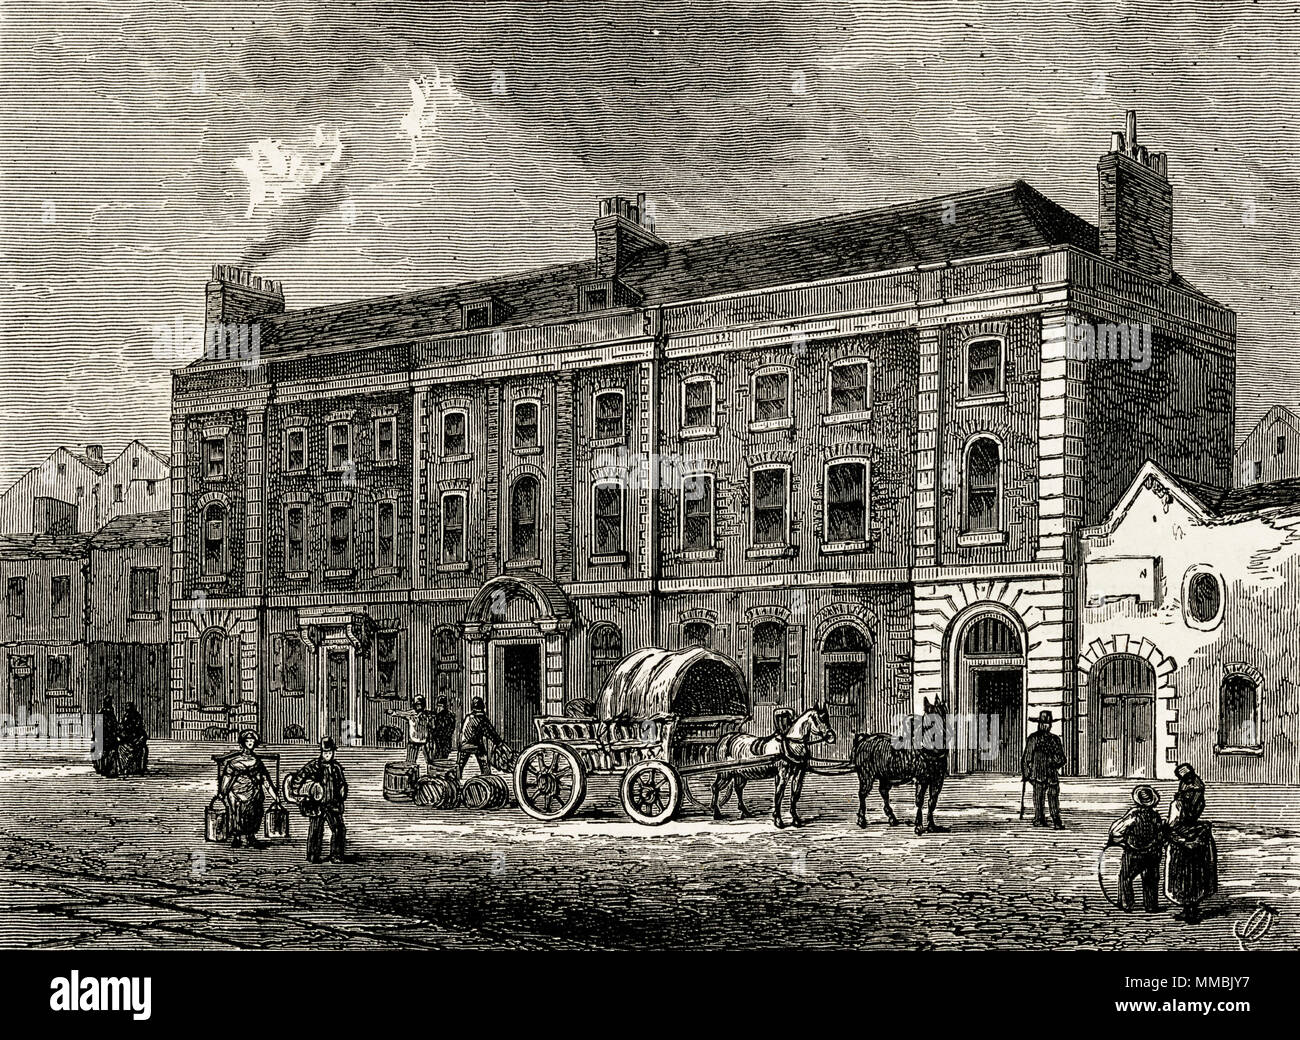 Le théâtre, le Portugal Street, London, England, UK avec dailylife dans la rue. 19ème siècle gravure victorienne circa 1878 Banque D'Images